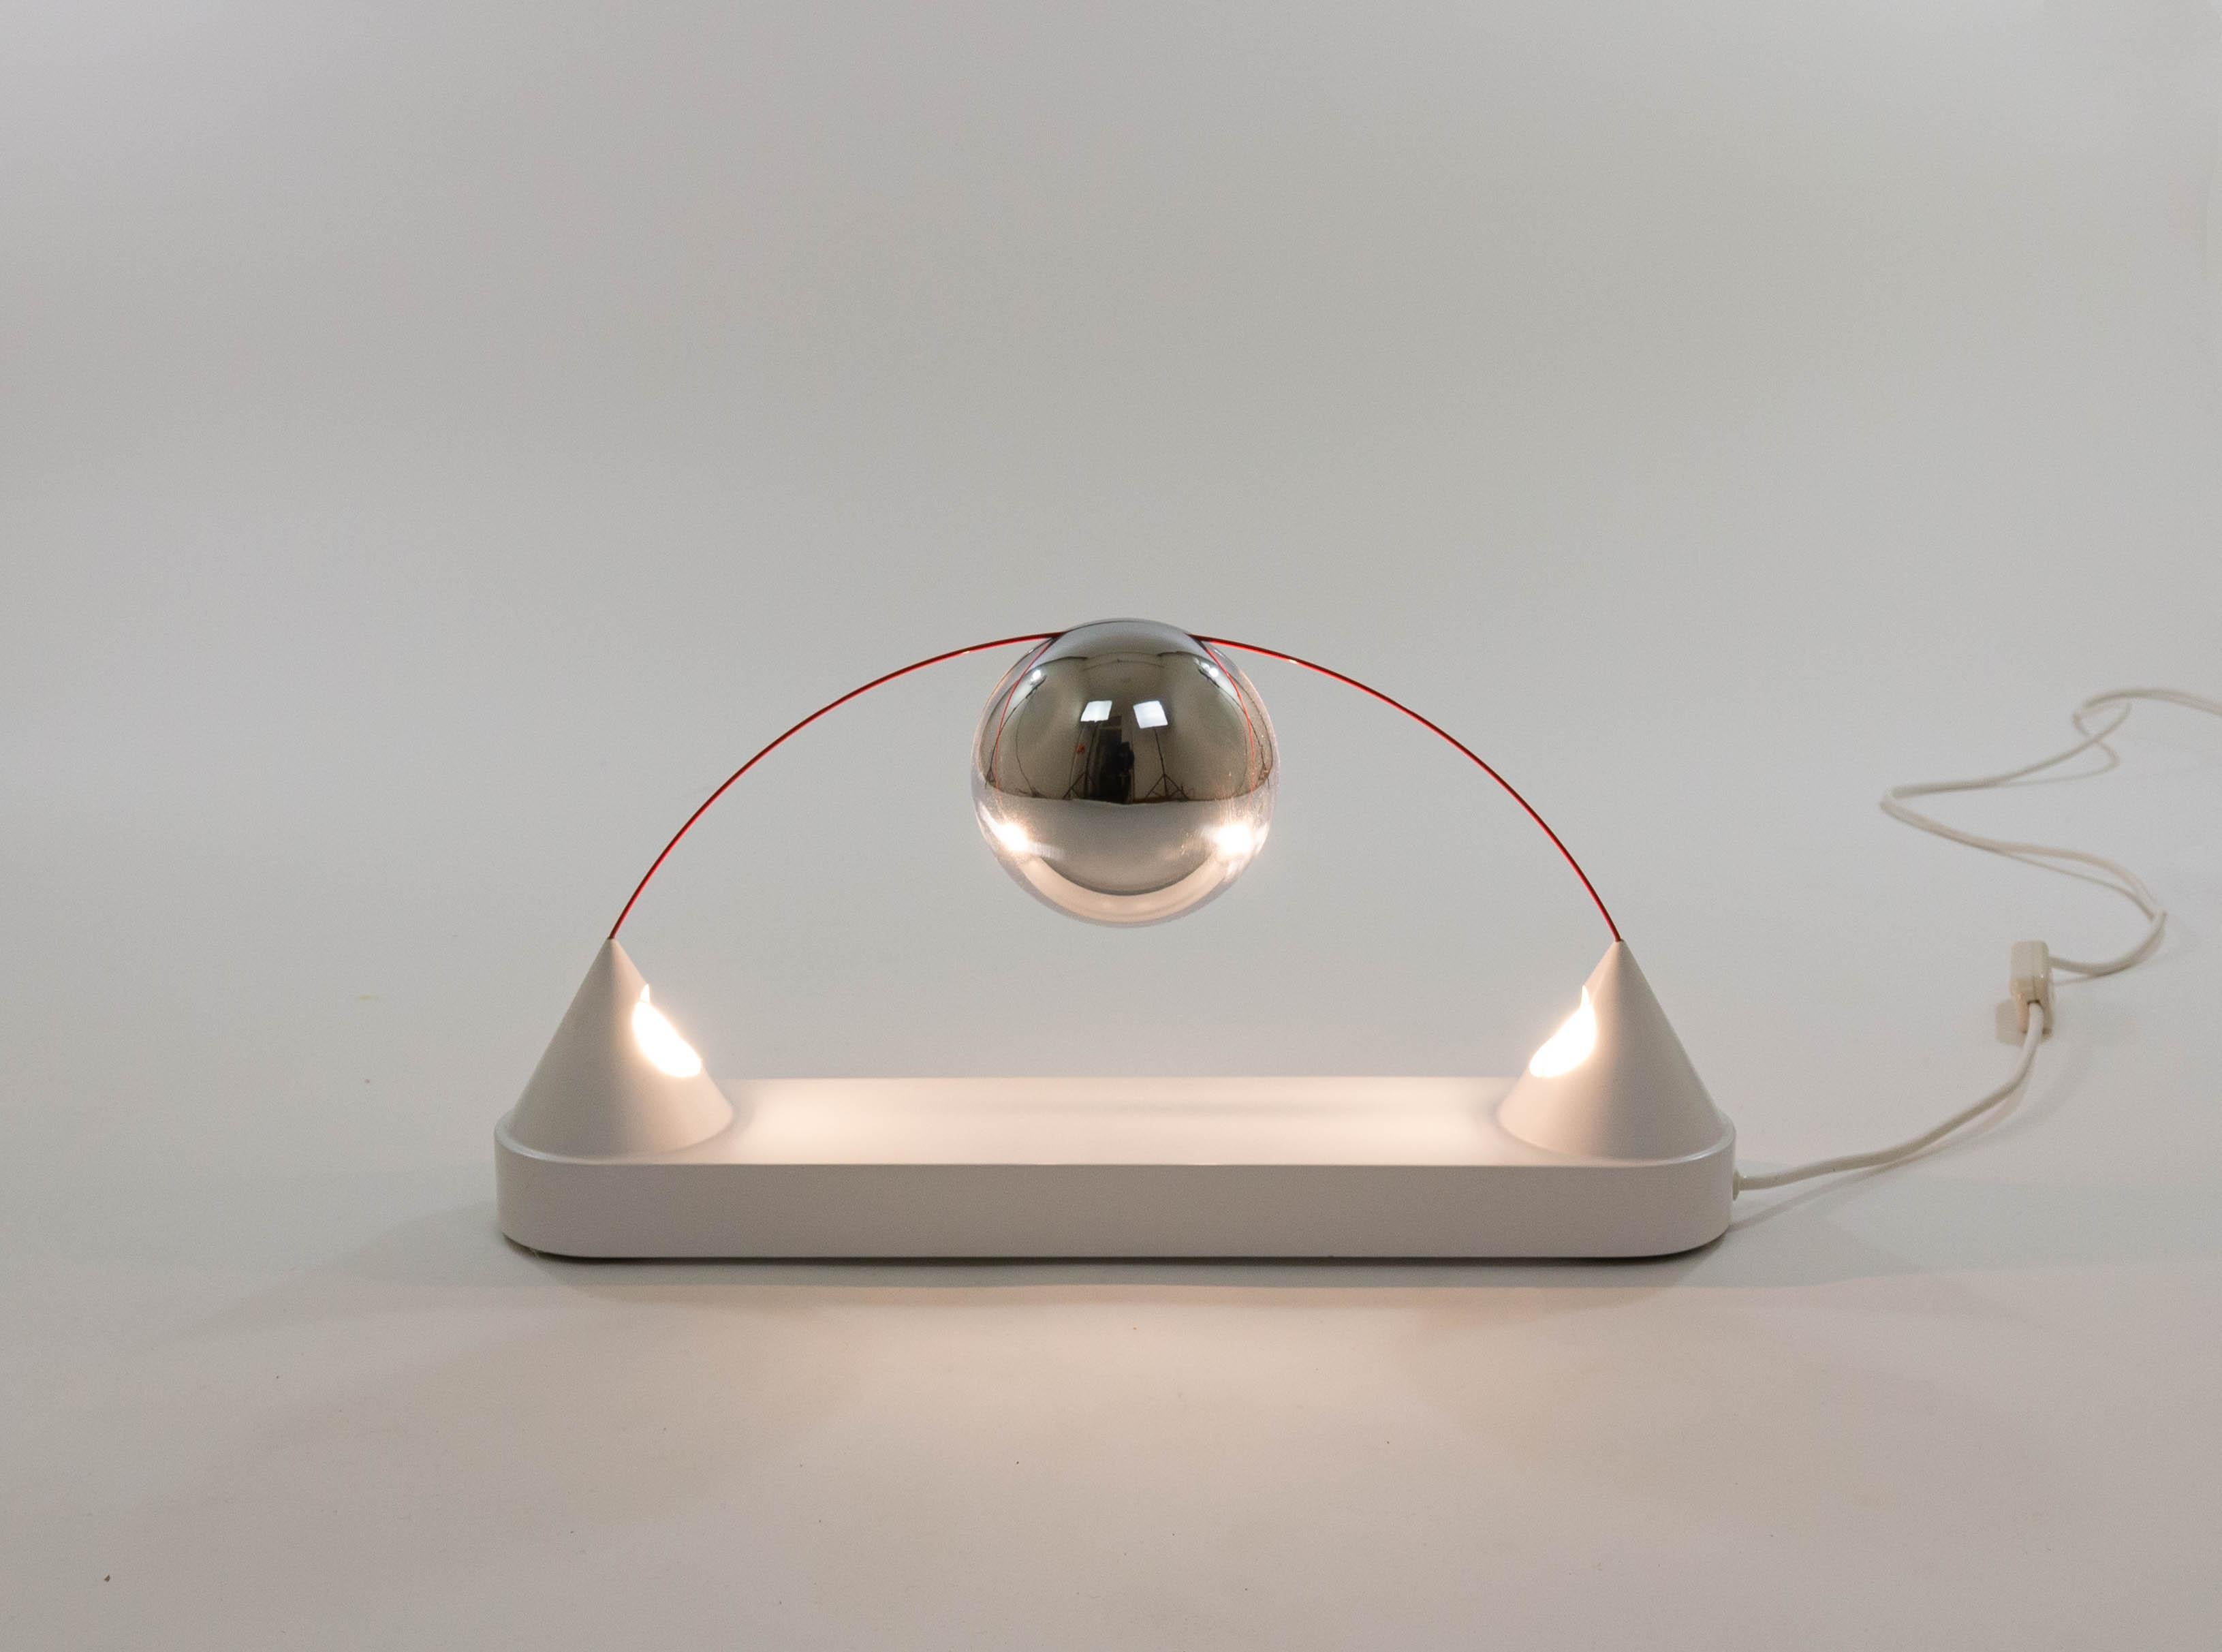 Lampe de table Mercurio conçue par Peppe di Giuli en 1971 et produite par Sirrah.

Comme le décrit un catalogue original de Sirrah : 